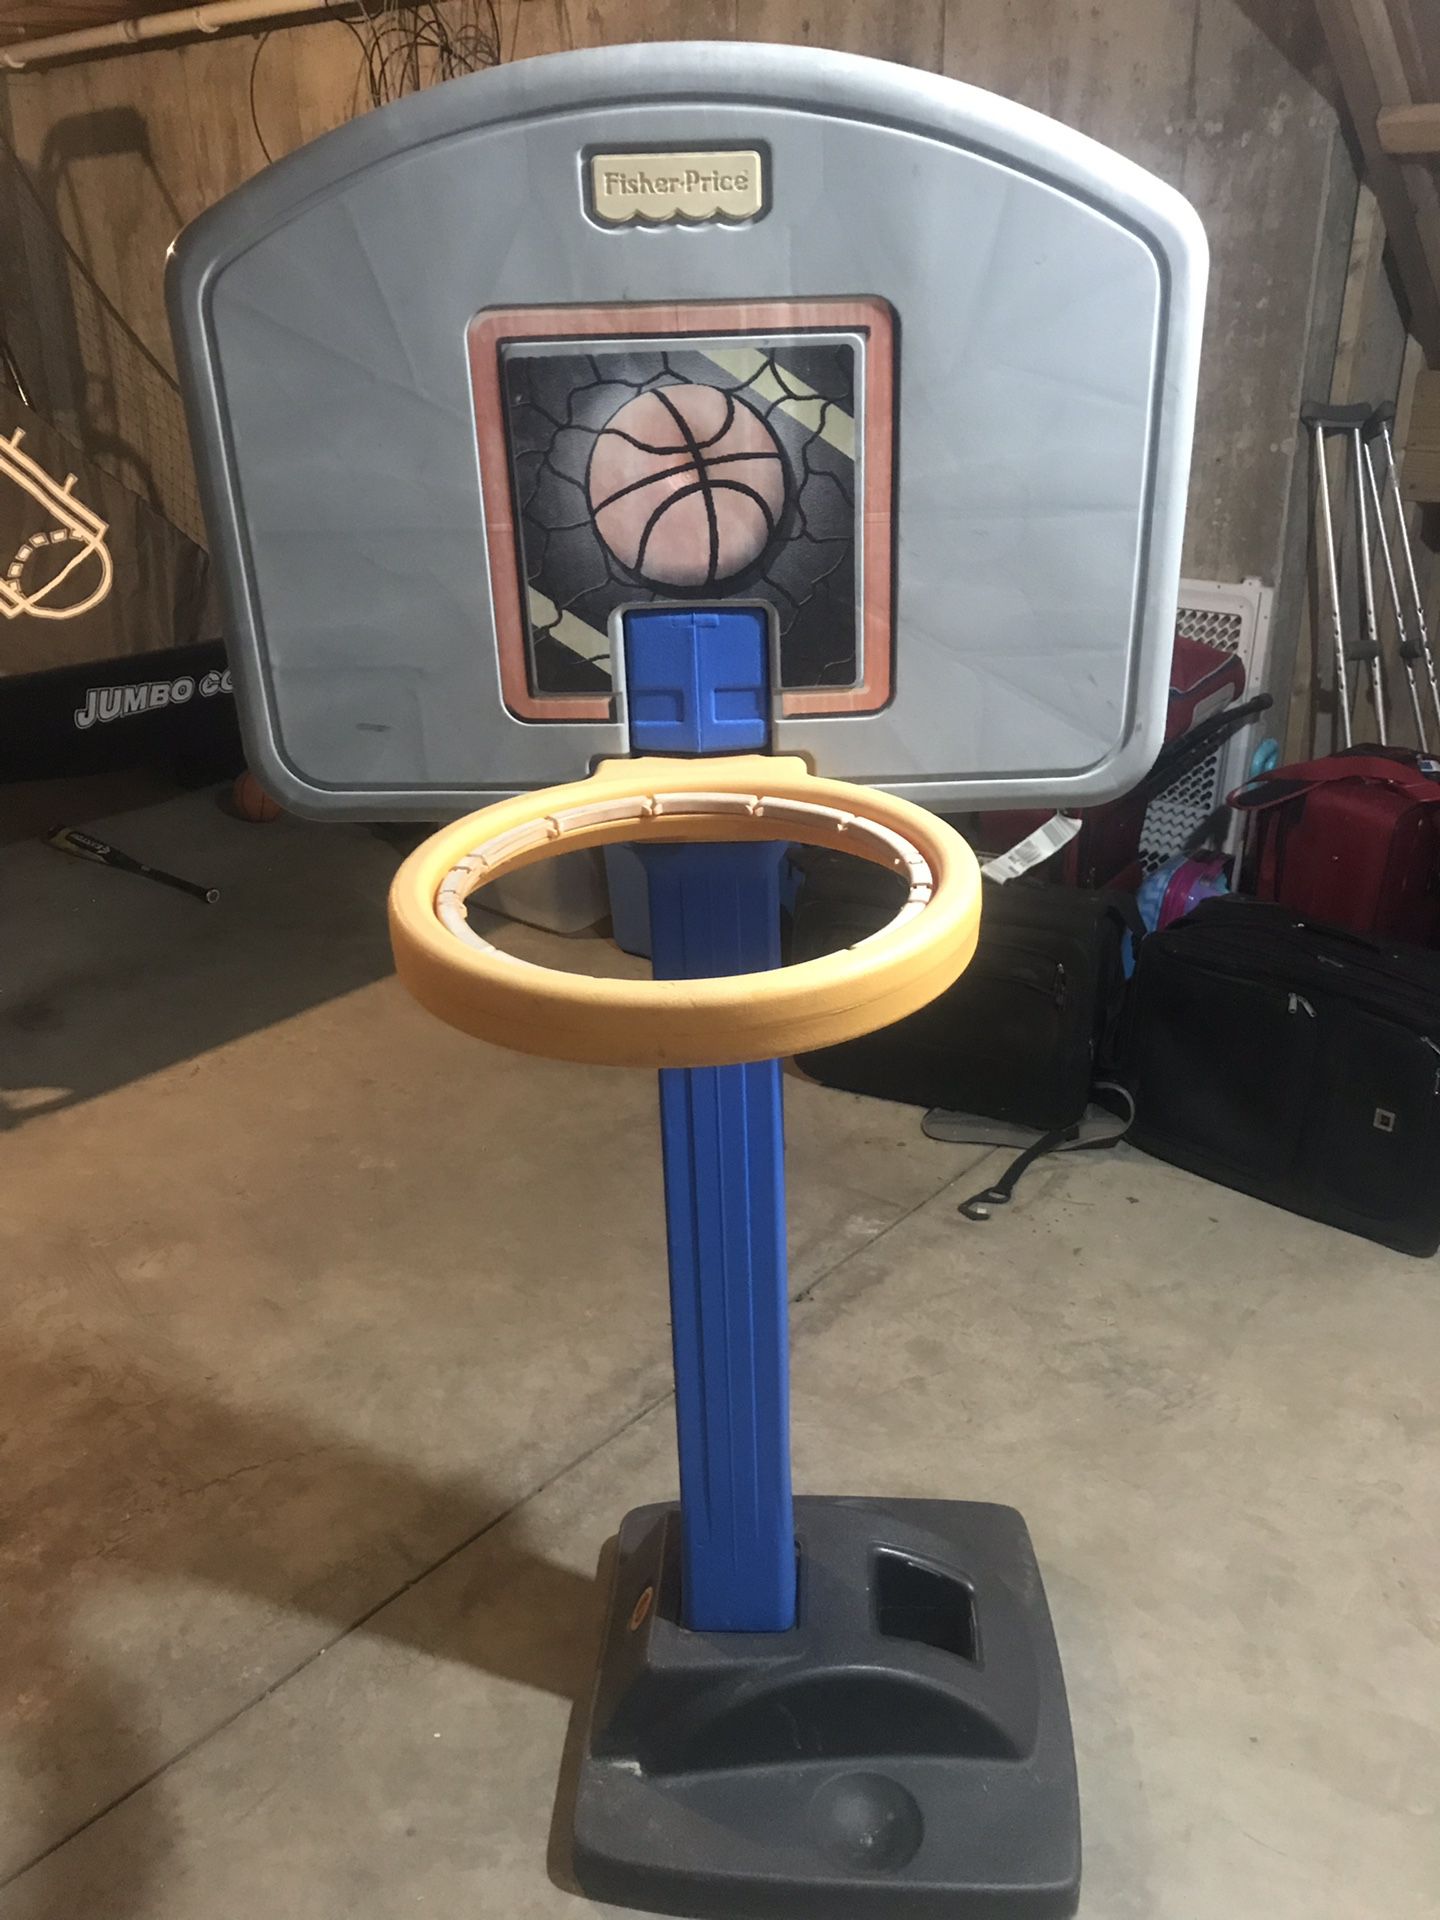 Fischer Price adjustable basketball hoop